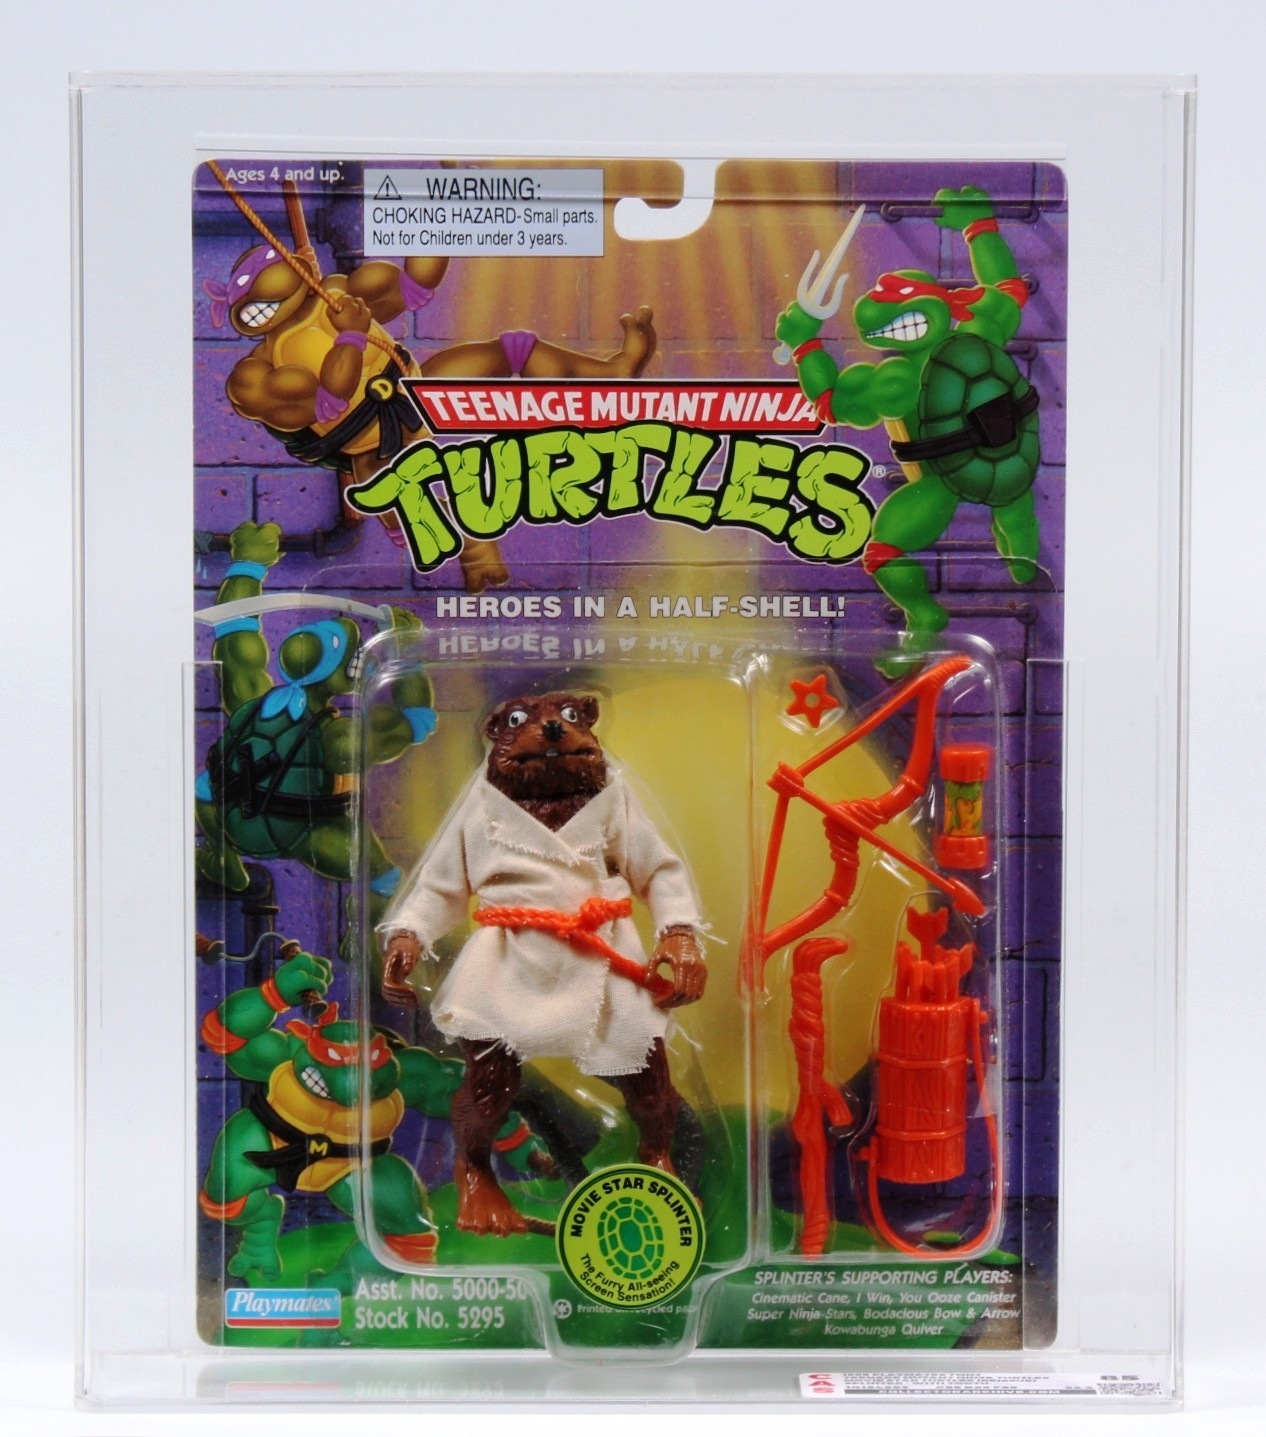 1999 Playmates Teenage Mutant Ninja Turtles Carded Action Figure - Movie  Star Splinter (Reissue)